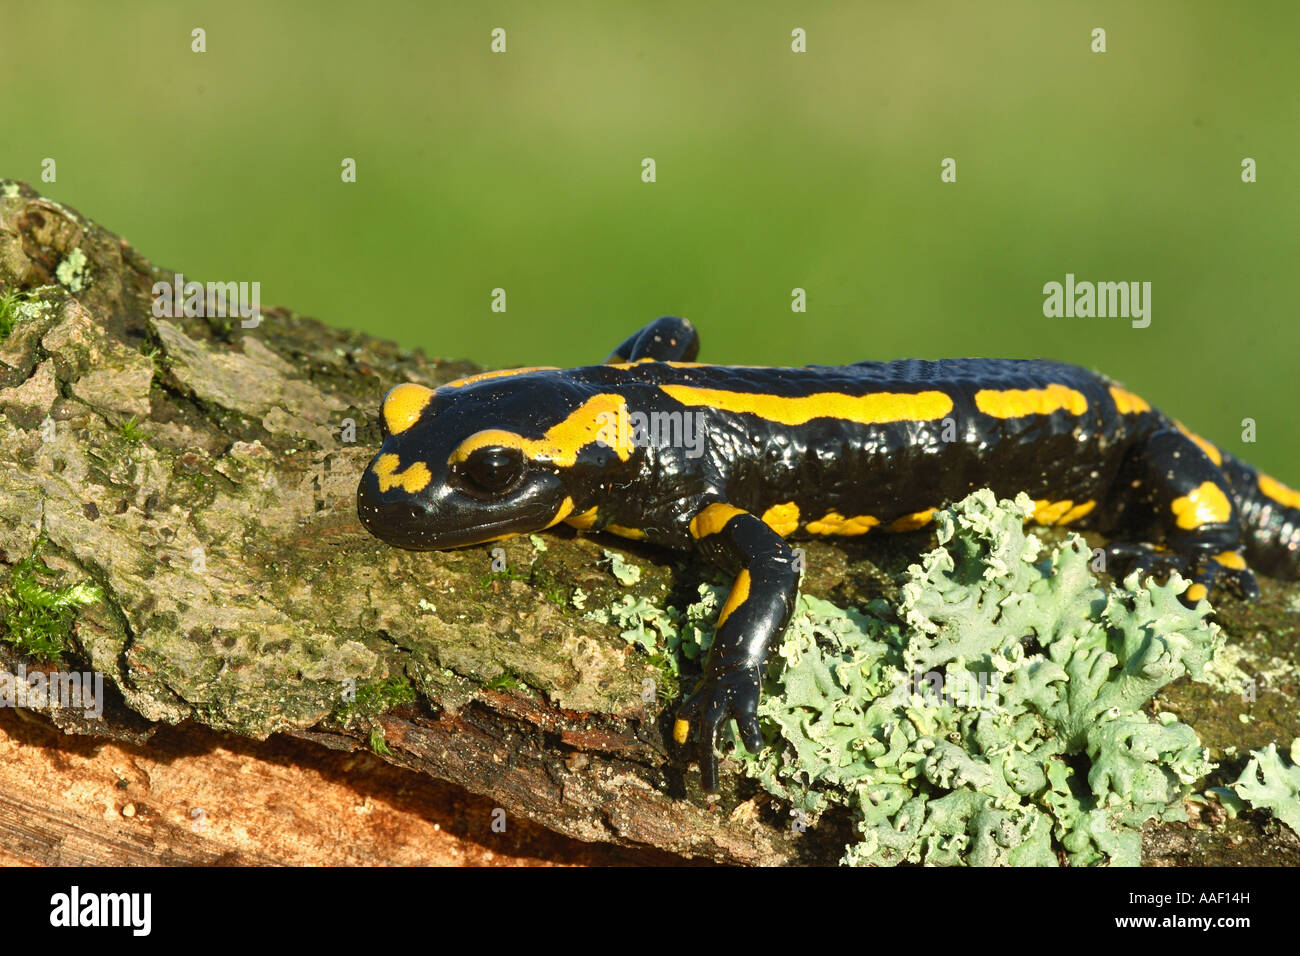 Fire Salamander (Salamandra salamandra) on a log Stock Photo